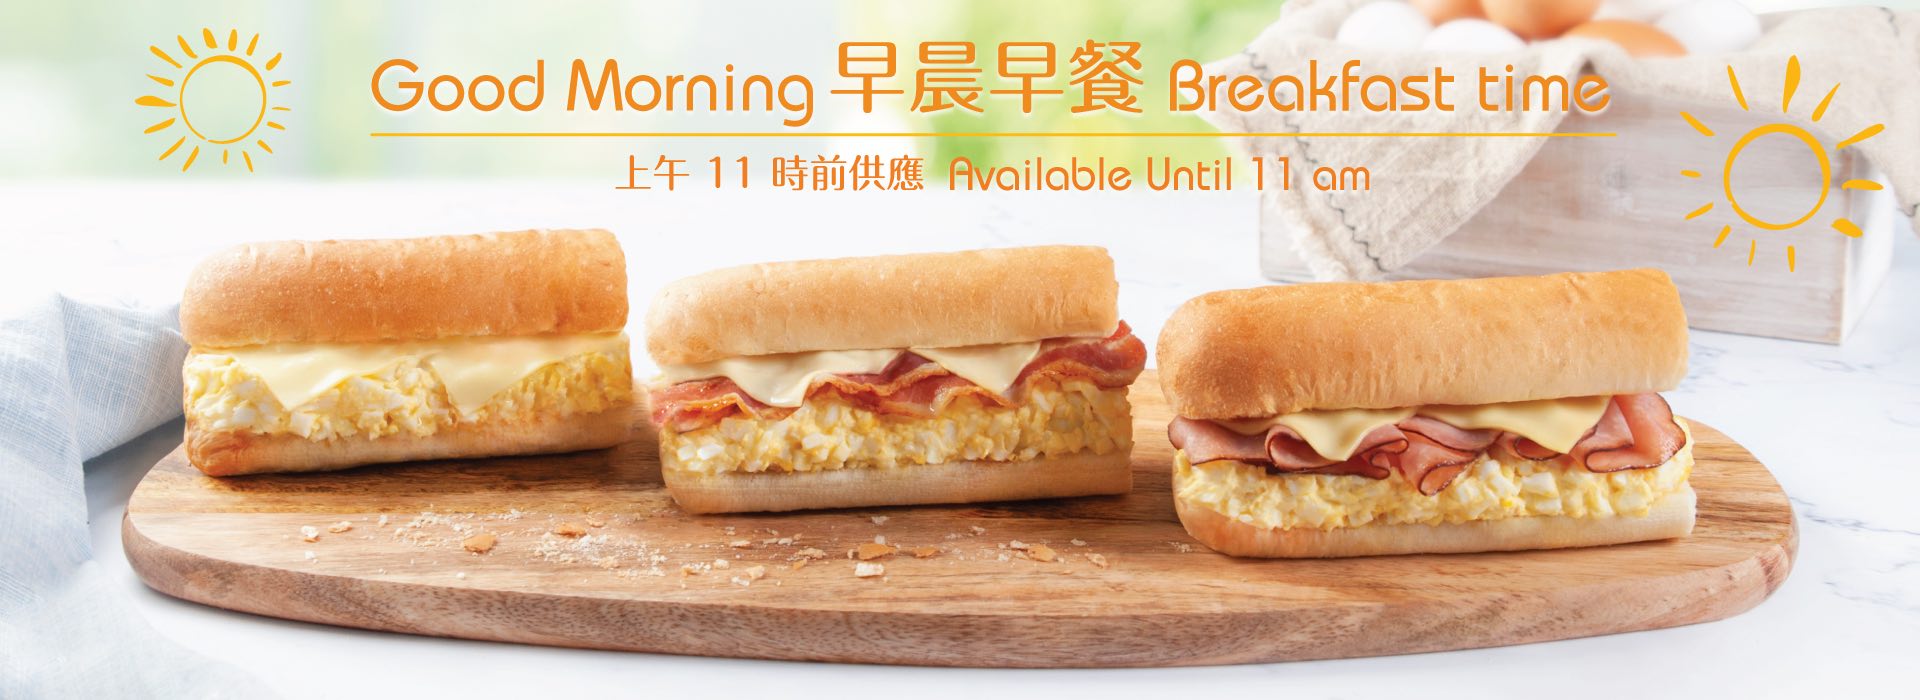 Subway HK - Breakfast offer